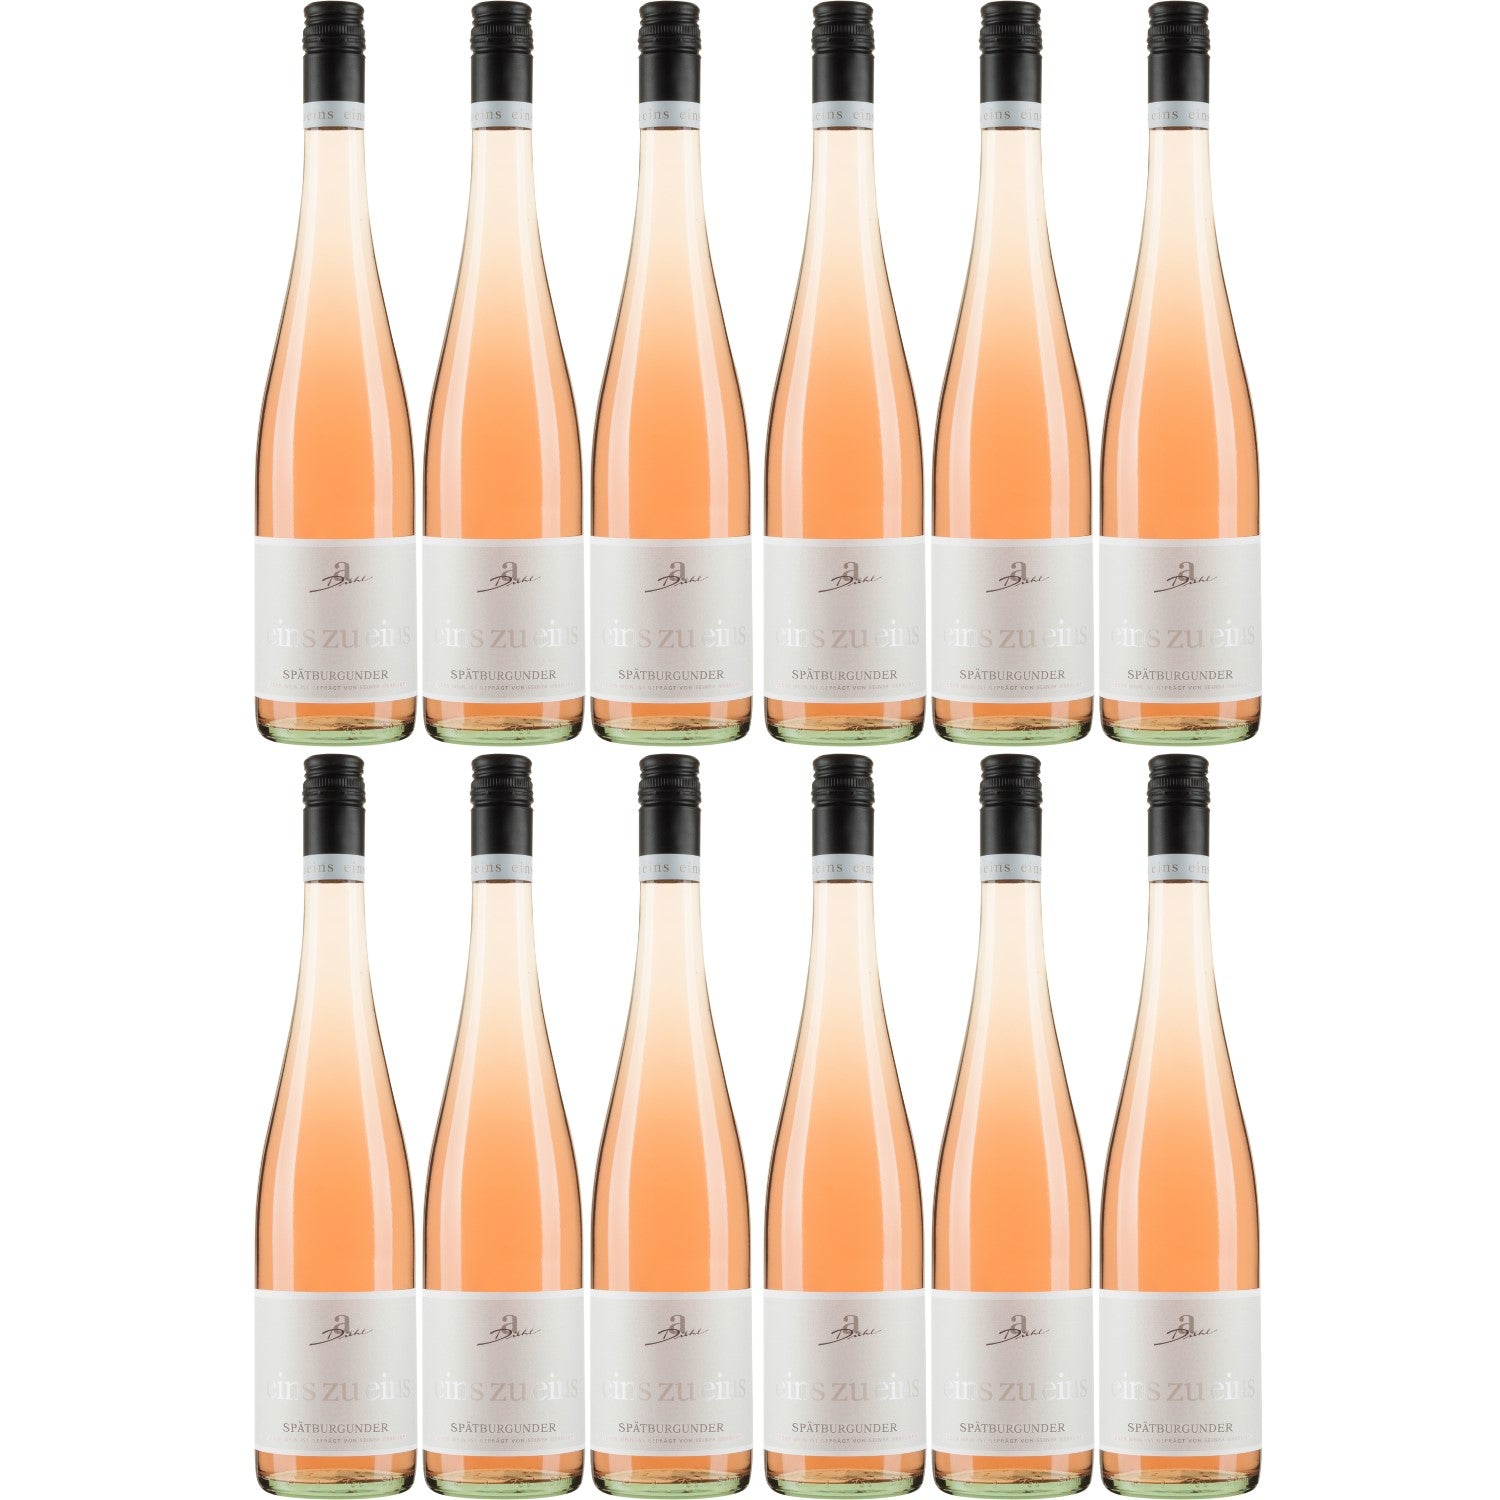 A. Diehl Spätburgunder Roséwein eins zu eins Wein trocken QbA Deutschland (12 x 0.75l) - Versanel -